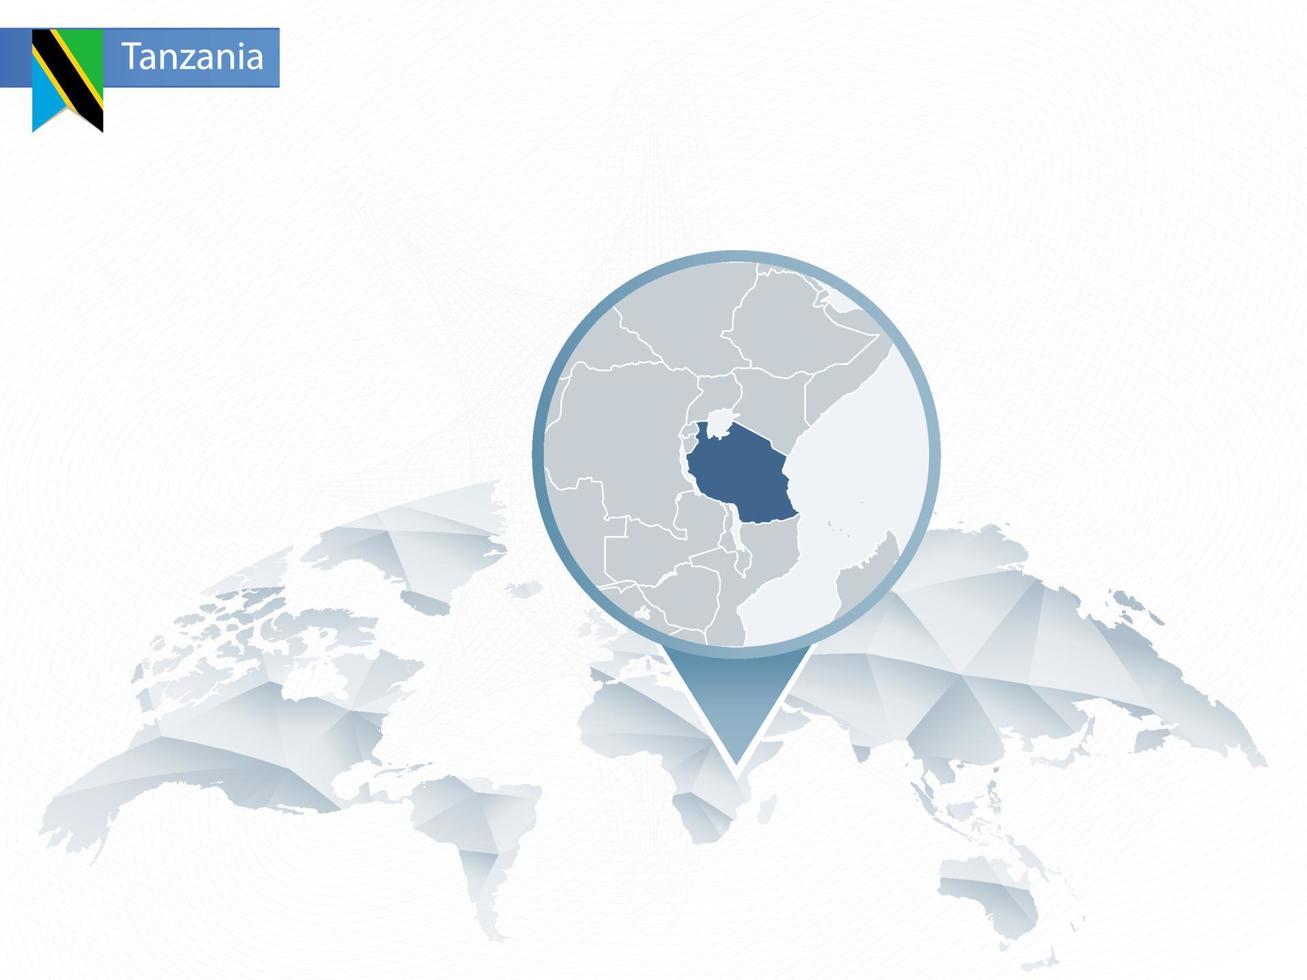 mappa del mondo arrotondata astratta con mappa dettagliata della tanzania appuntata. vettore